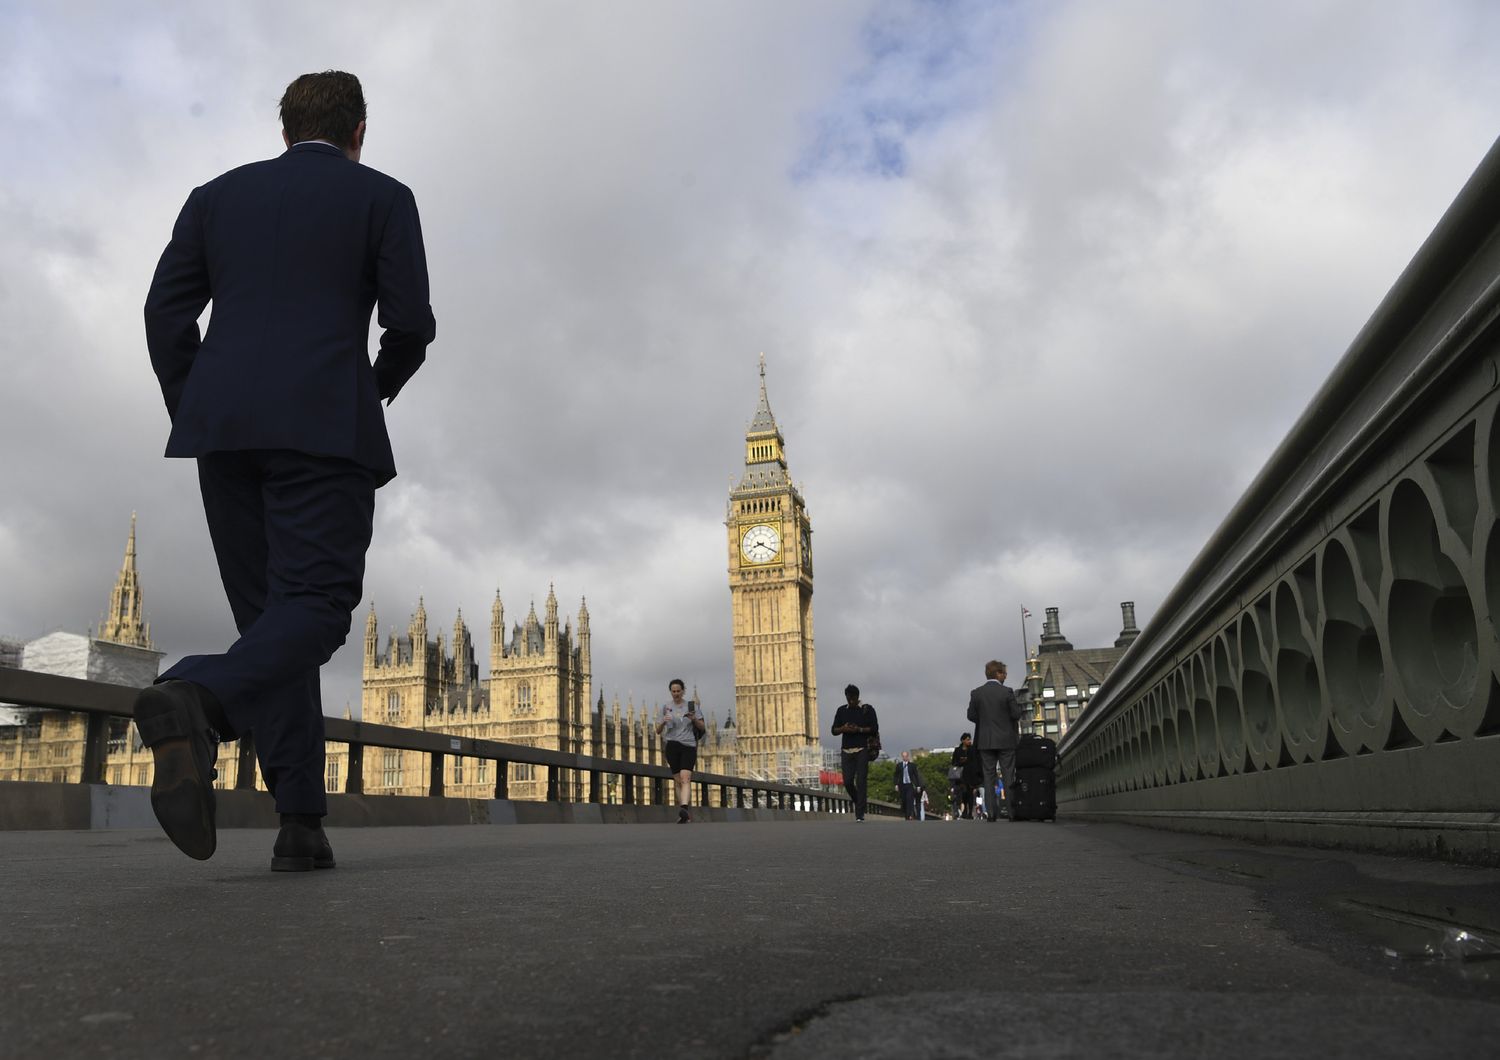 Una persona su cinque dice di aver subito molestie sessuali nel Parlamento inglese